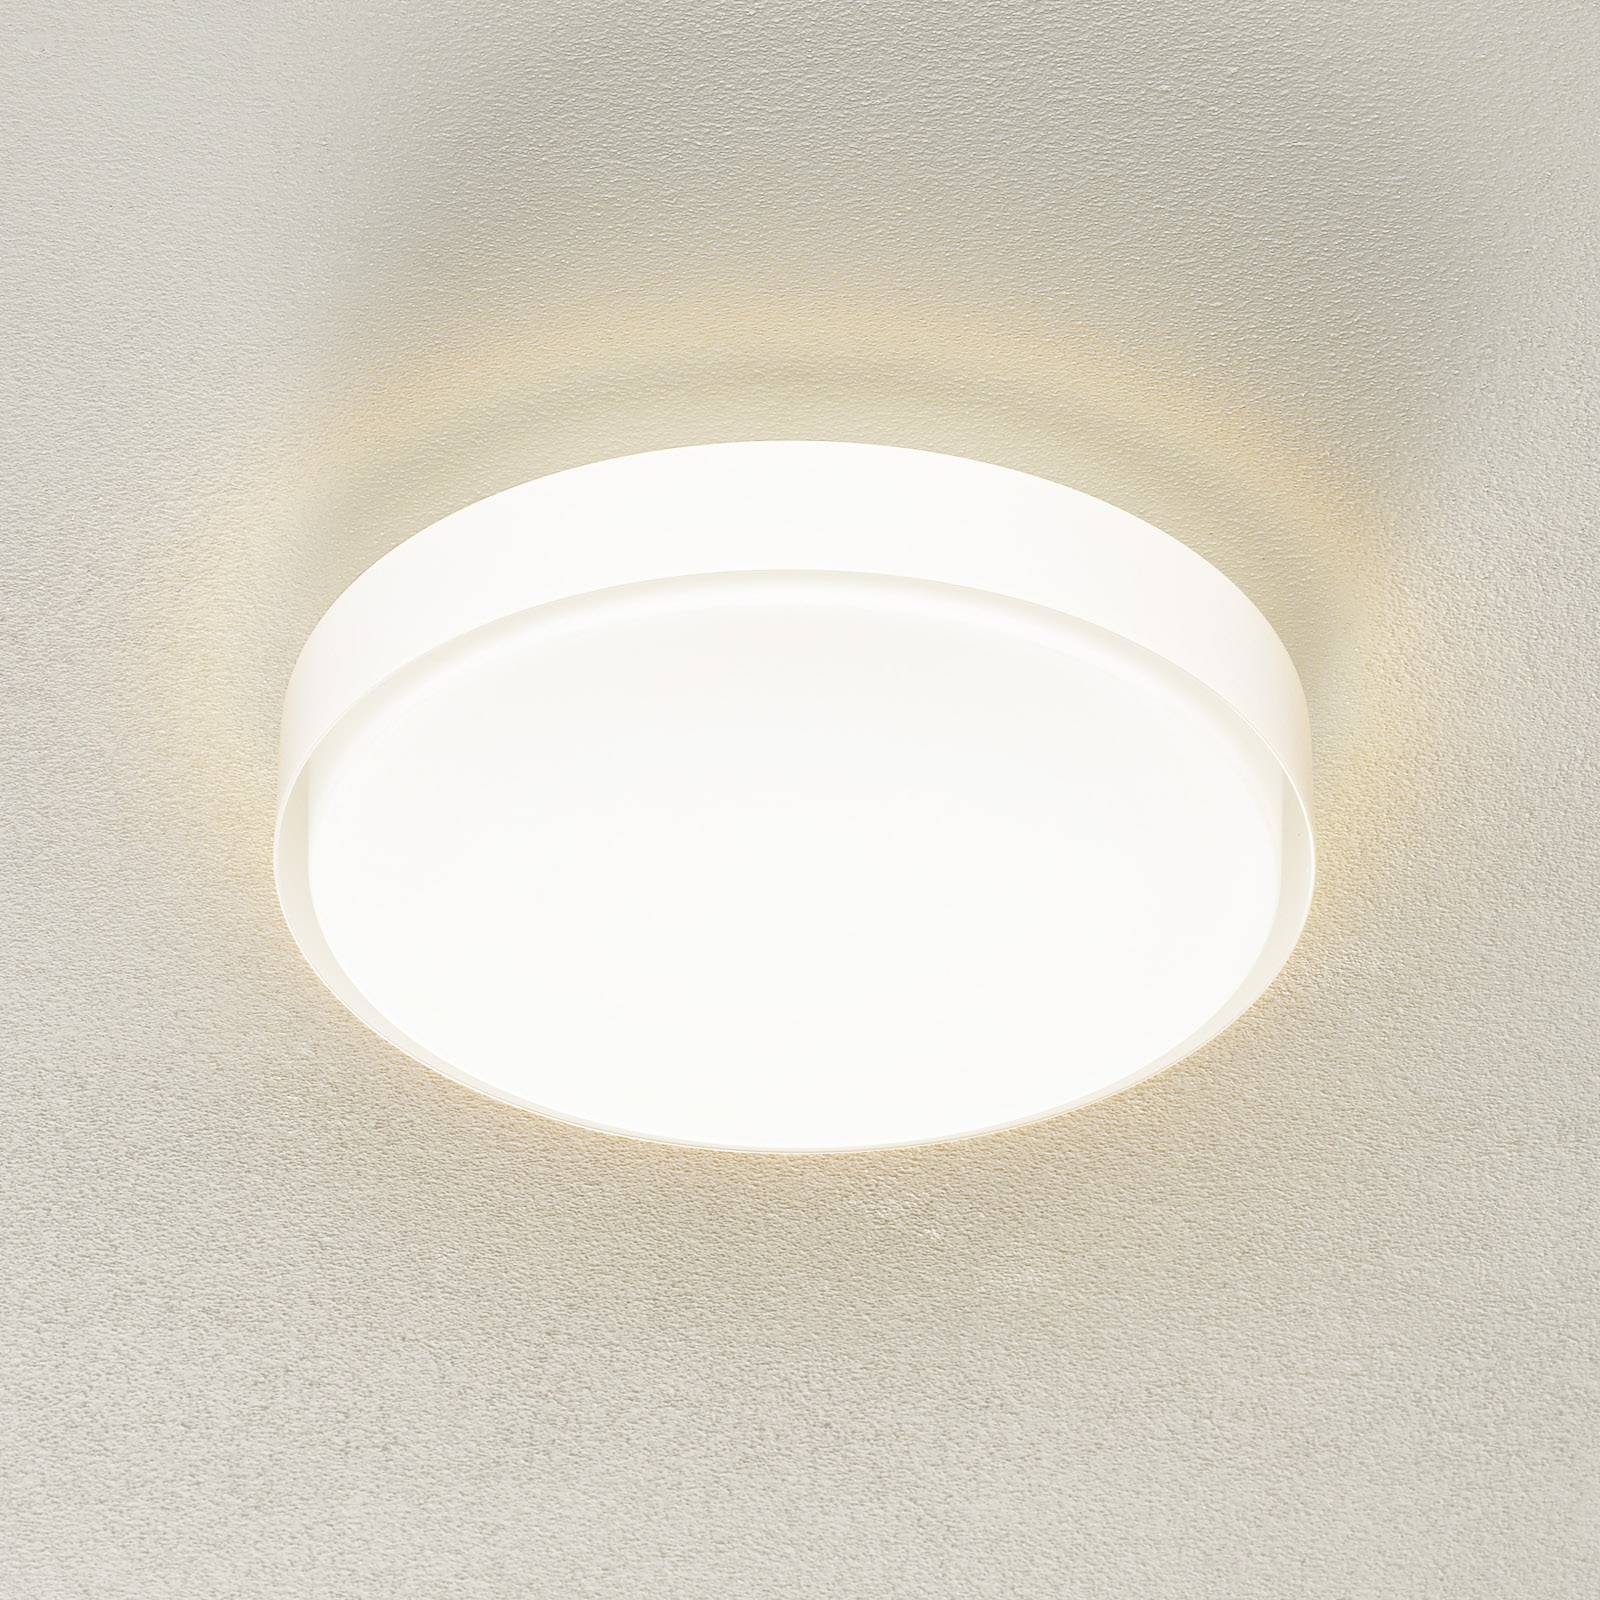 BEGA 34278 LED-Deckenleuchte, weiß, Ø 36 cm, DALI